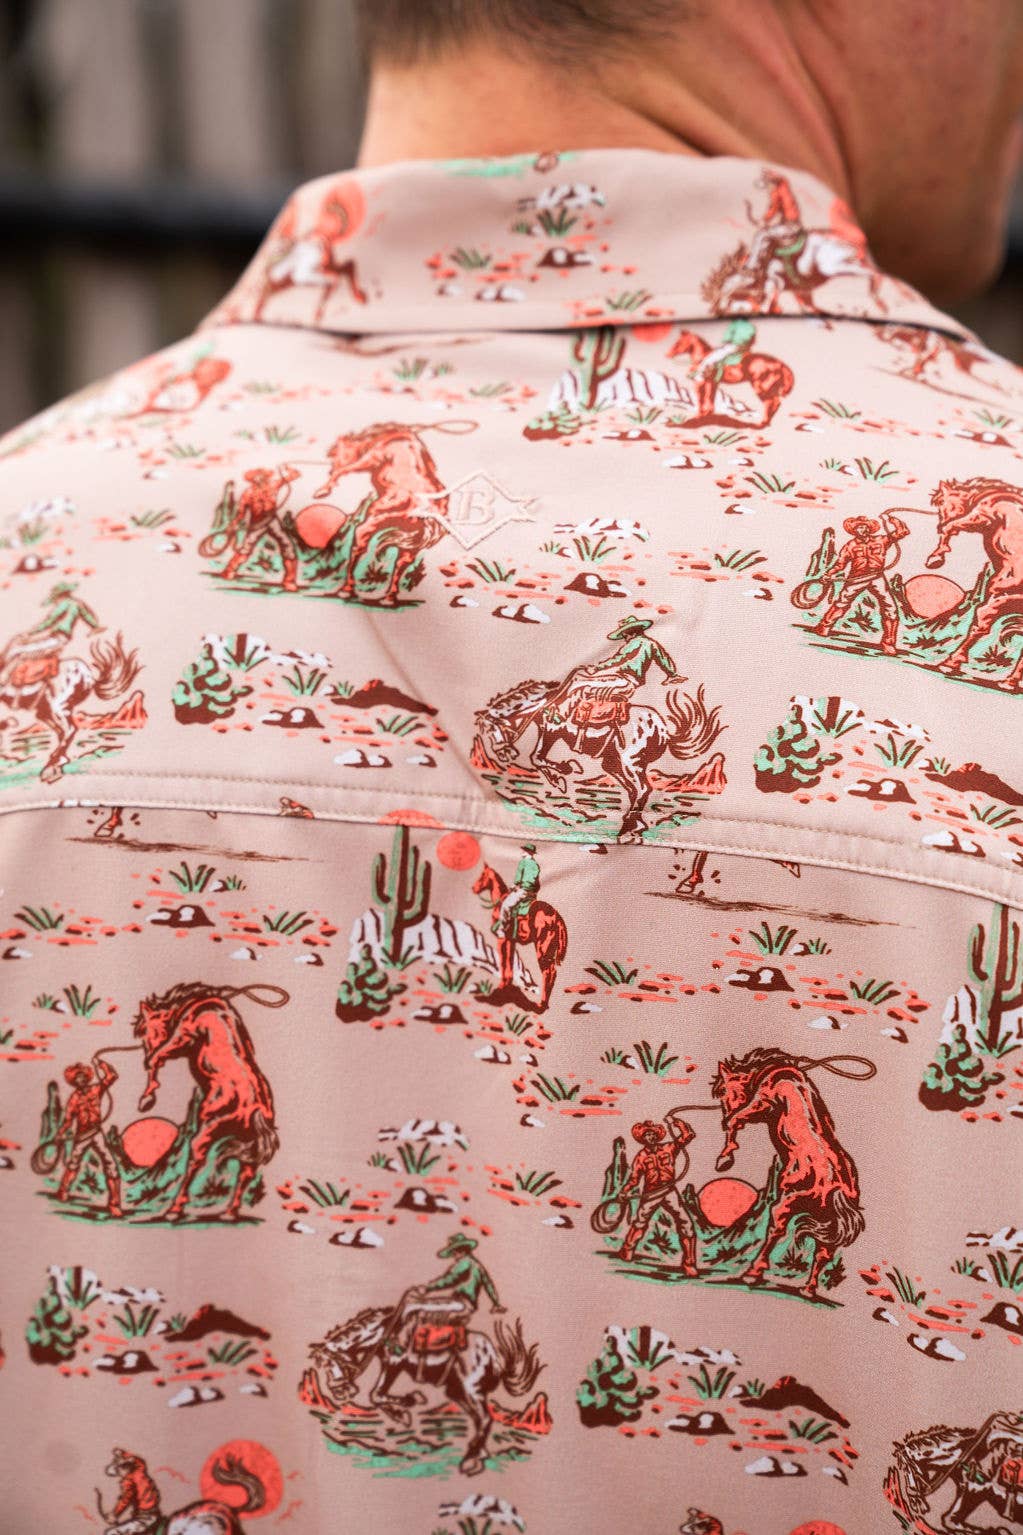 close-up of western pattern on a khaki shirt